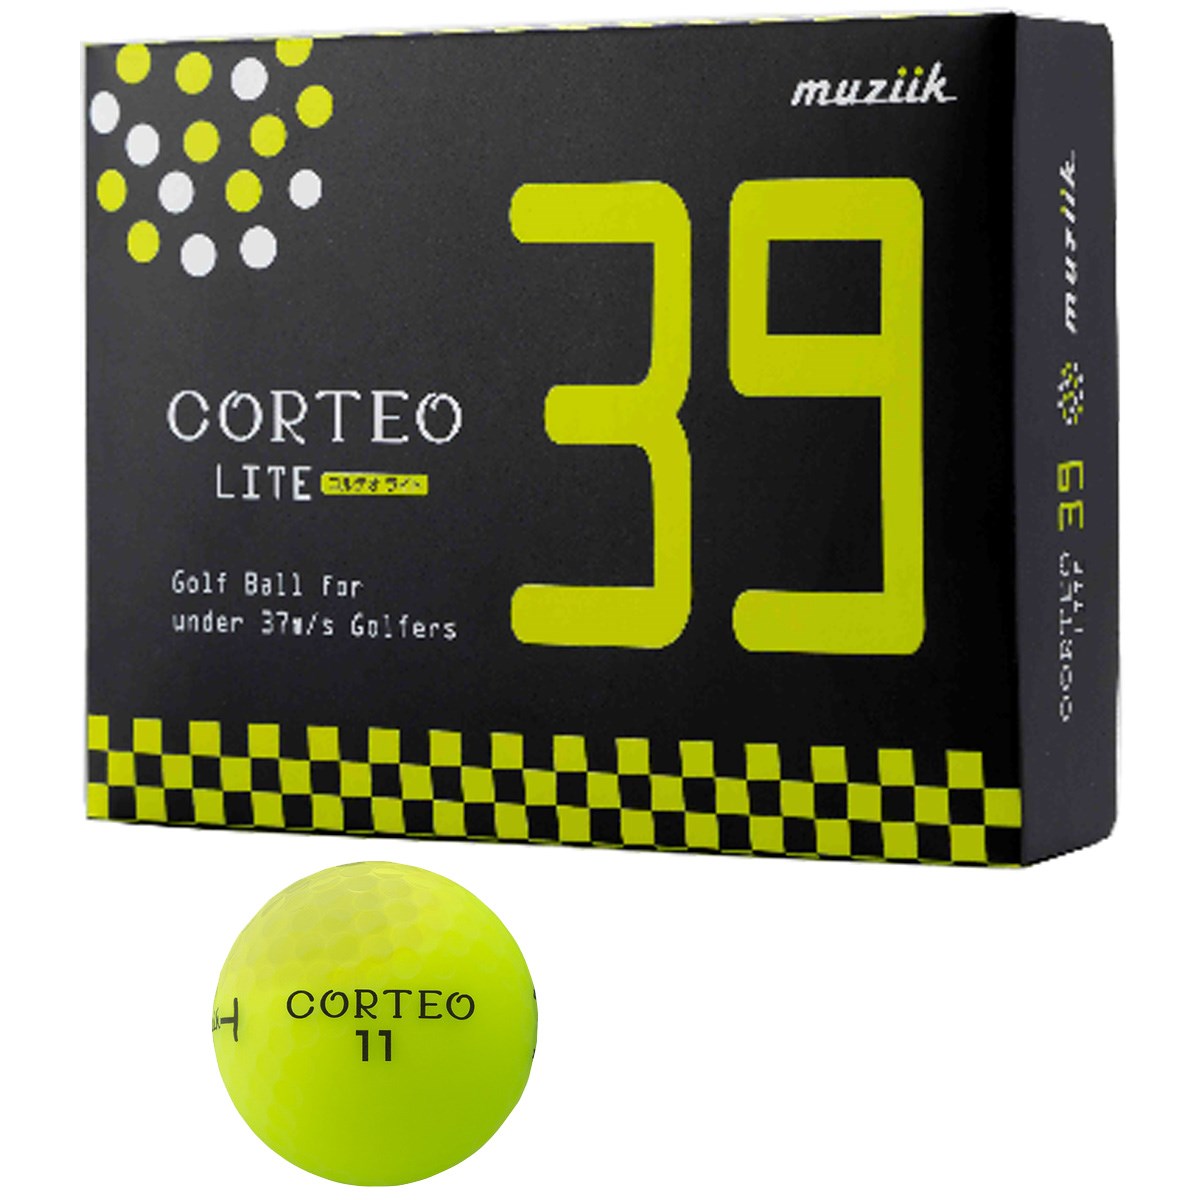  ムジーク コルテオライト39 ボール ゴルフ